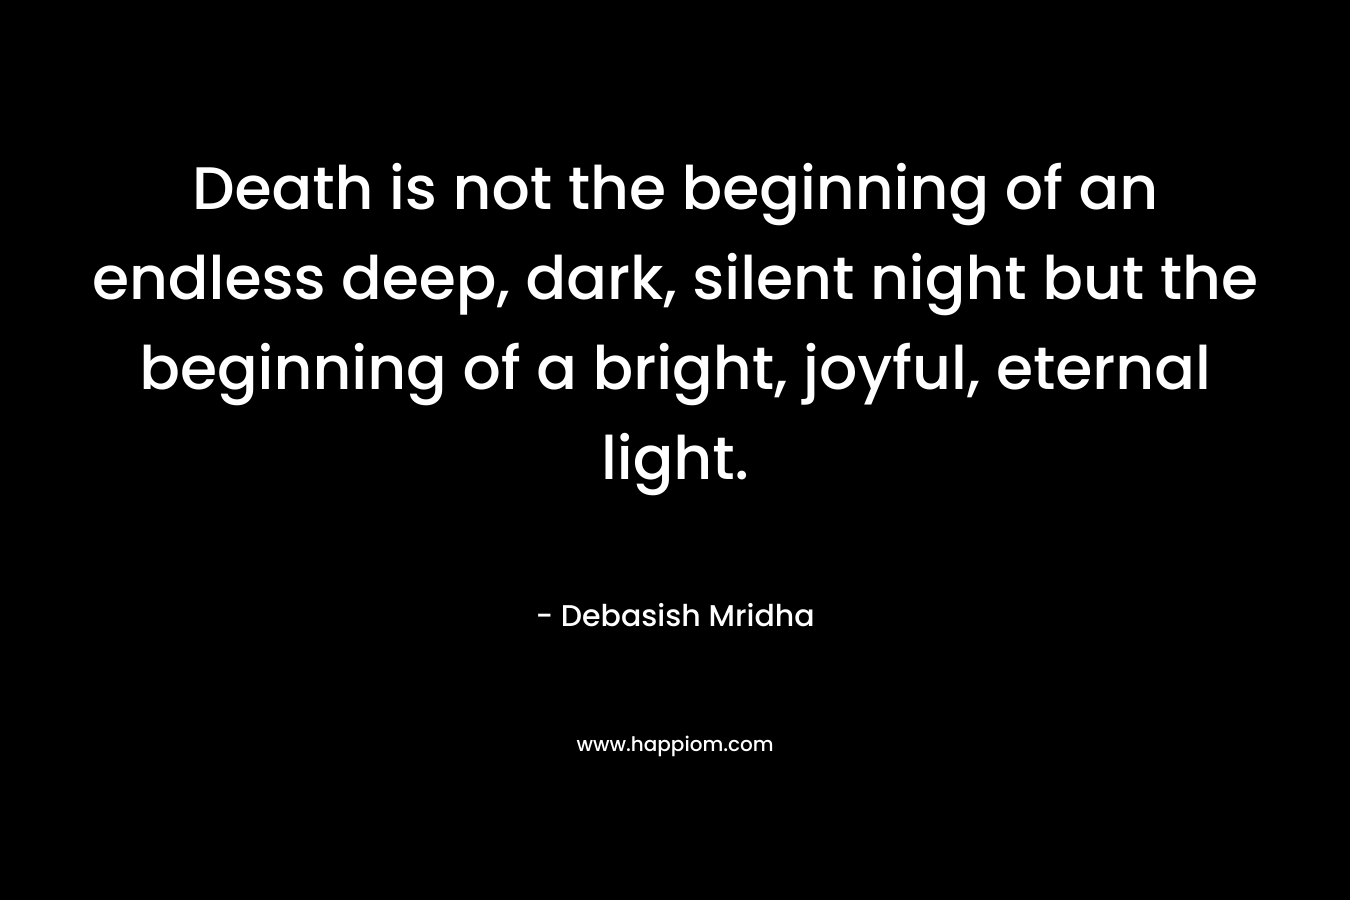 Death is not the beginning of an endless deep, dark, silent night but the beginning of a bright, joyful, eternal light.